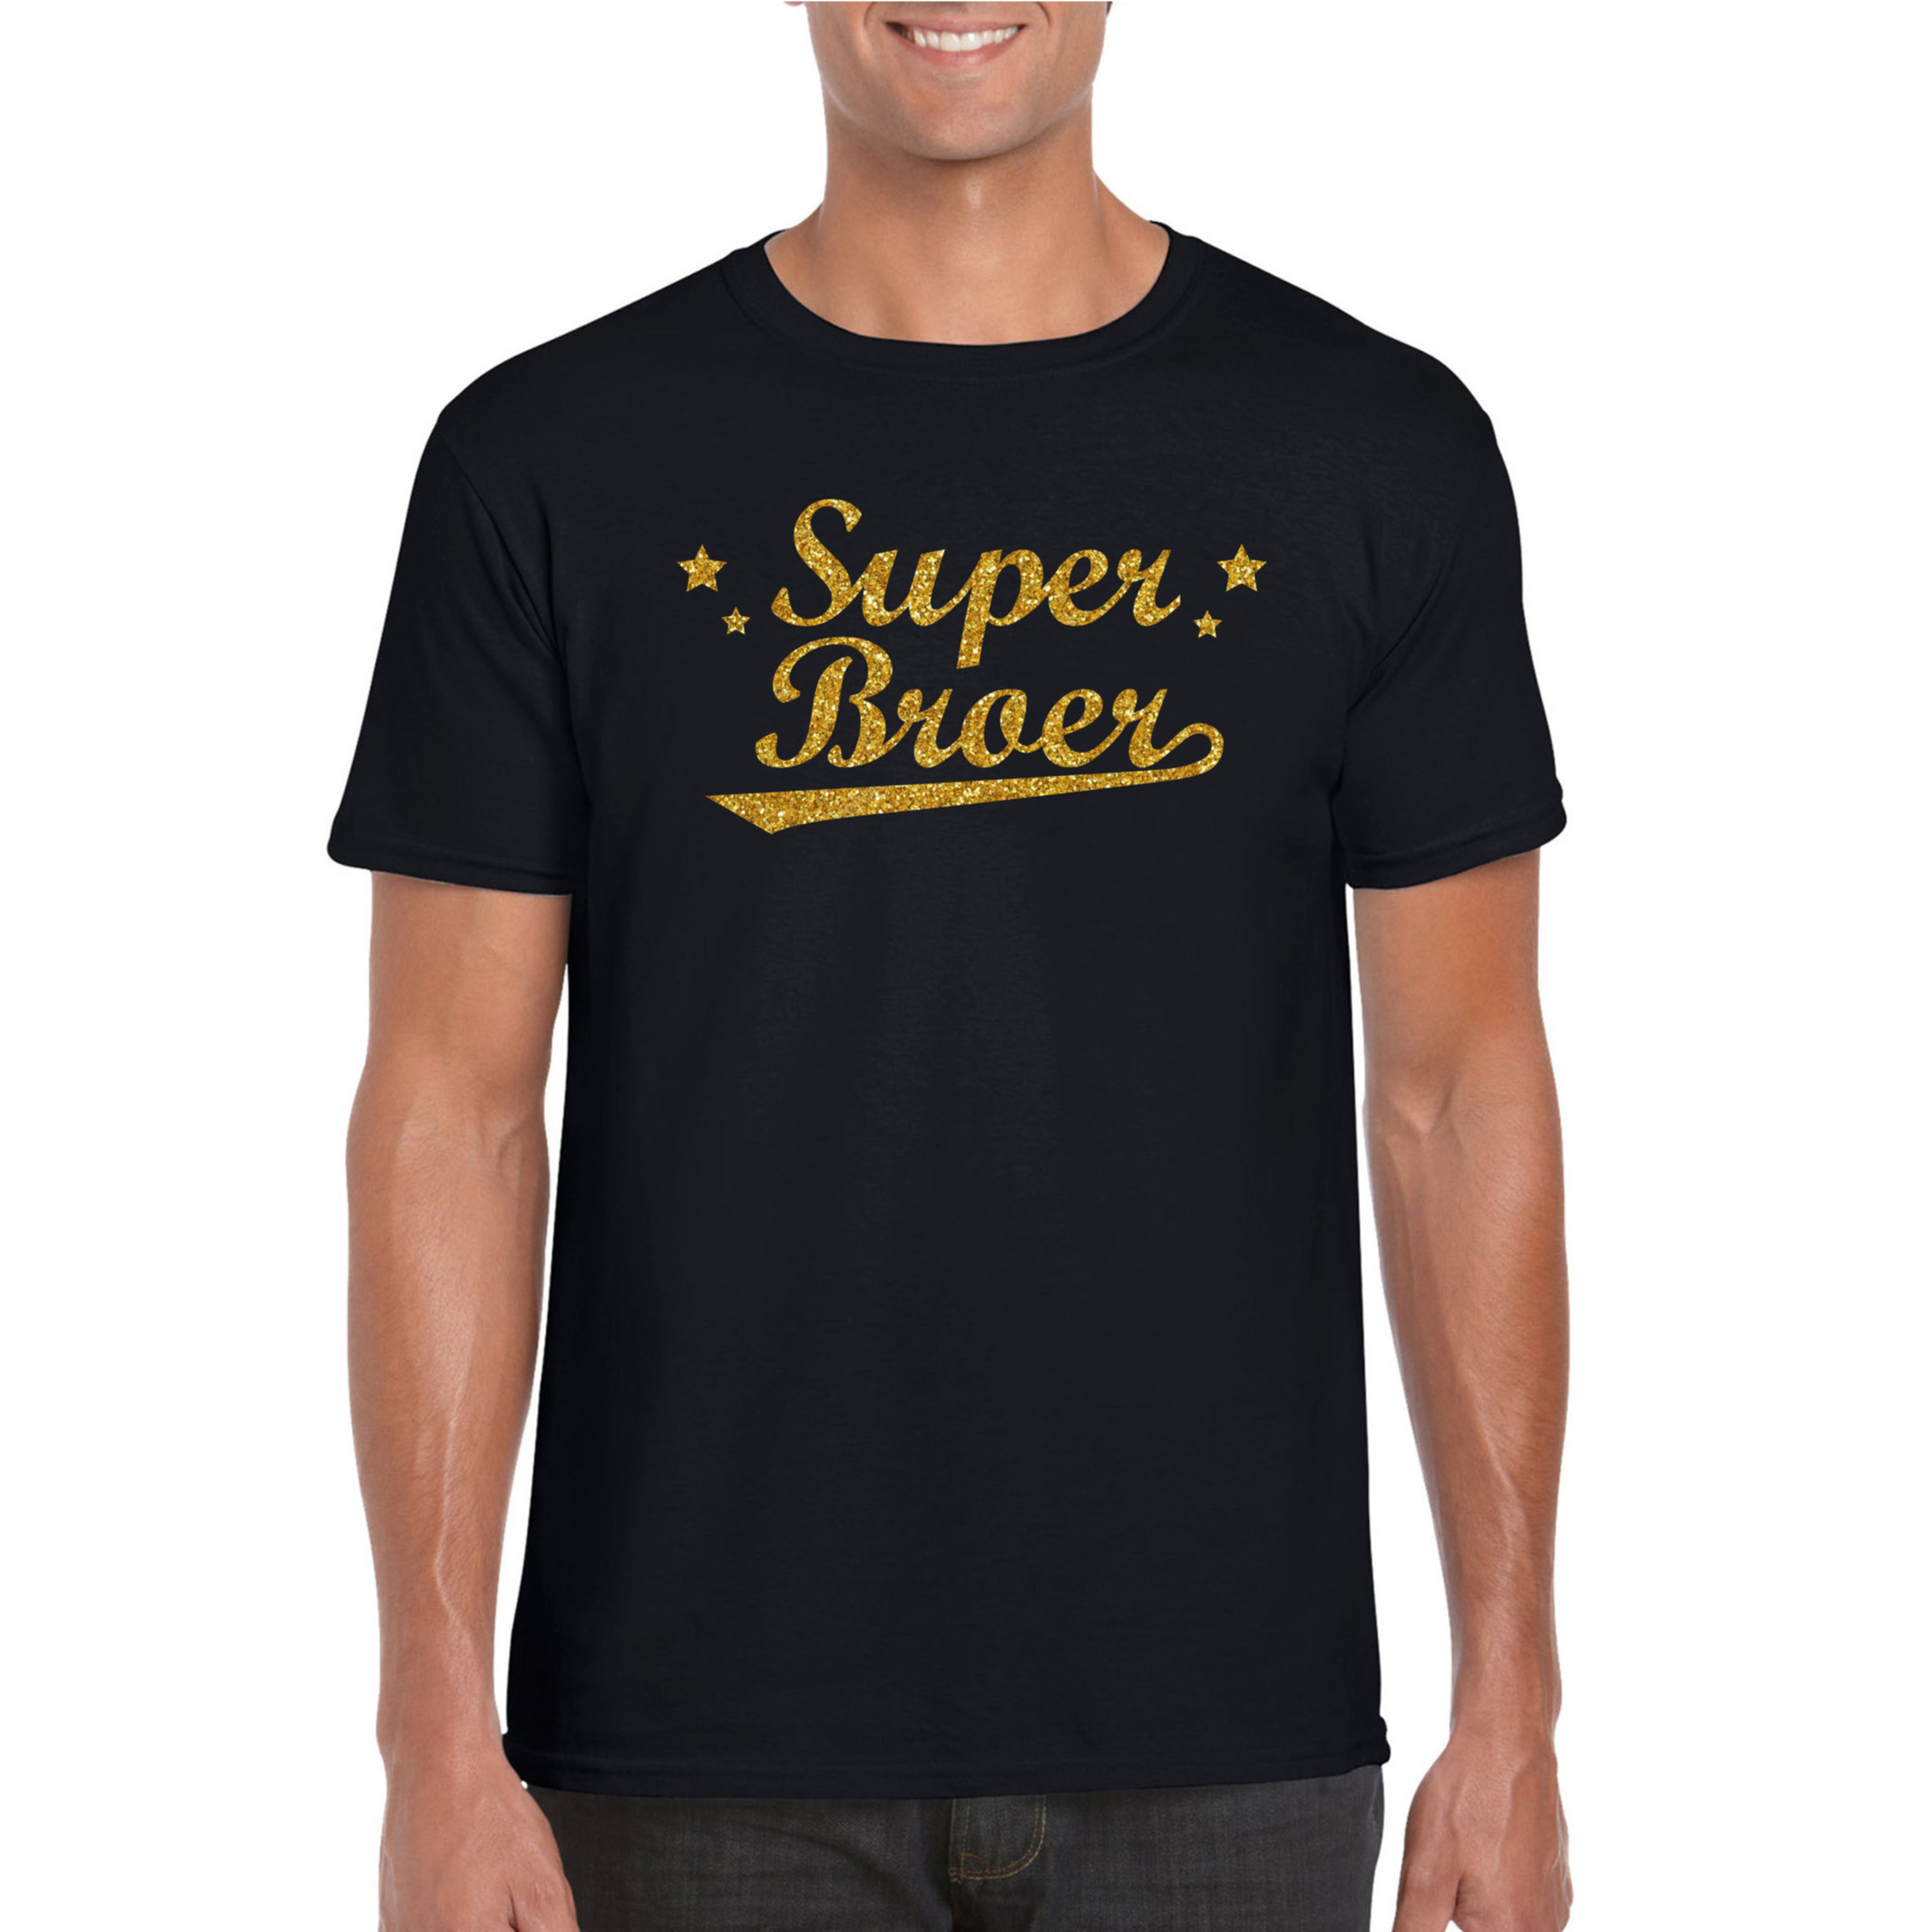 Super broer cadeau t-shirt met gouden glitters op zwart voor heren